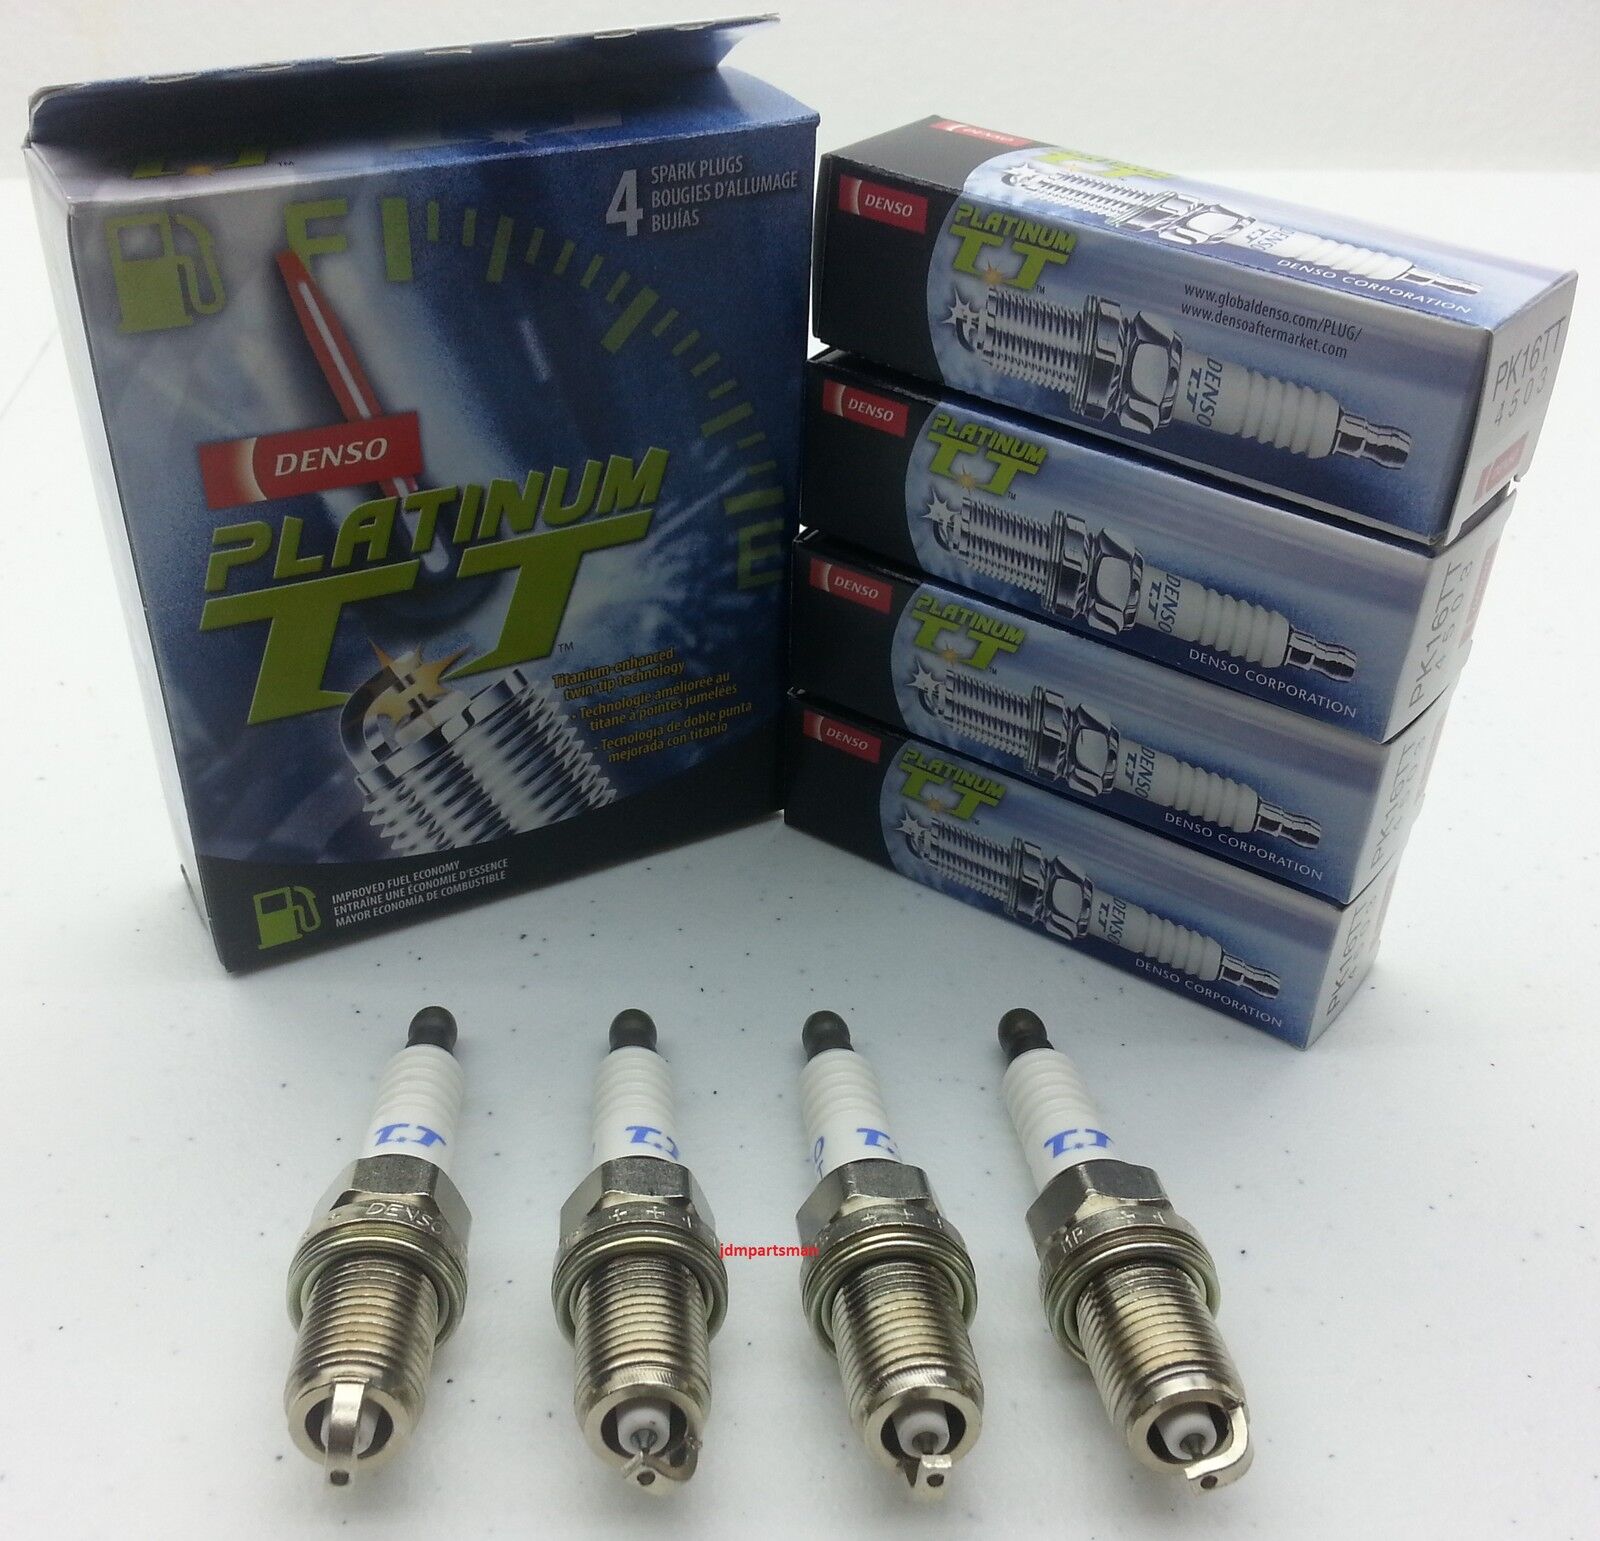 4pc set DENSO Platinum Titanium TT Spark Plug Pre-Gapped more Spark/Power PK16TT